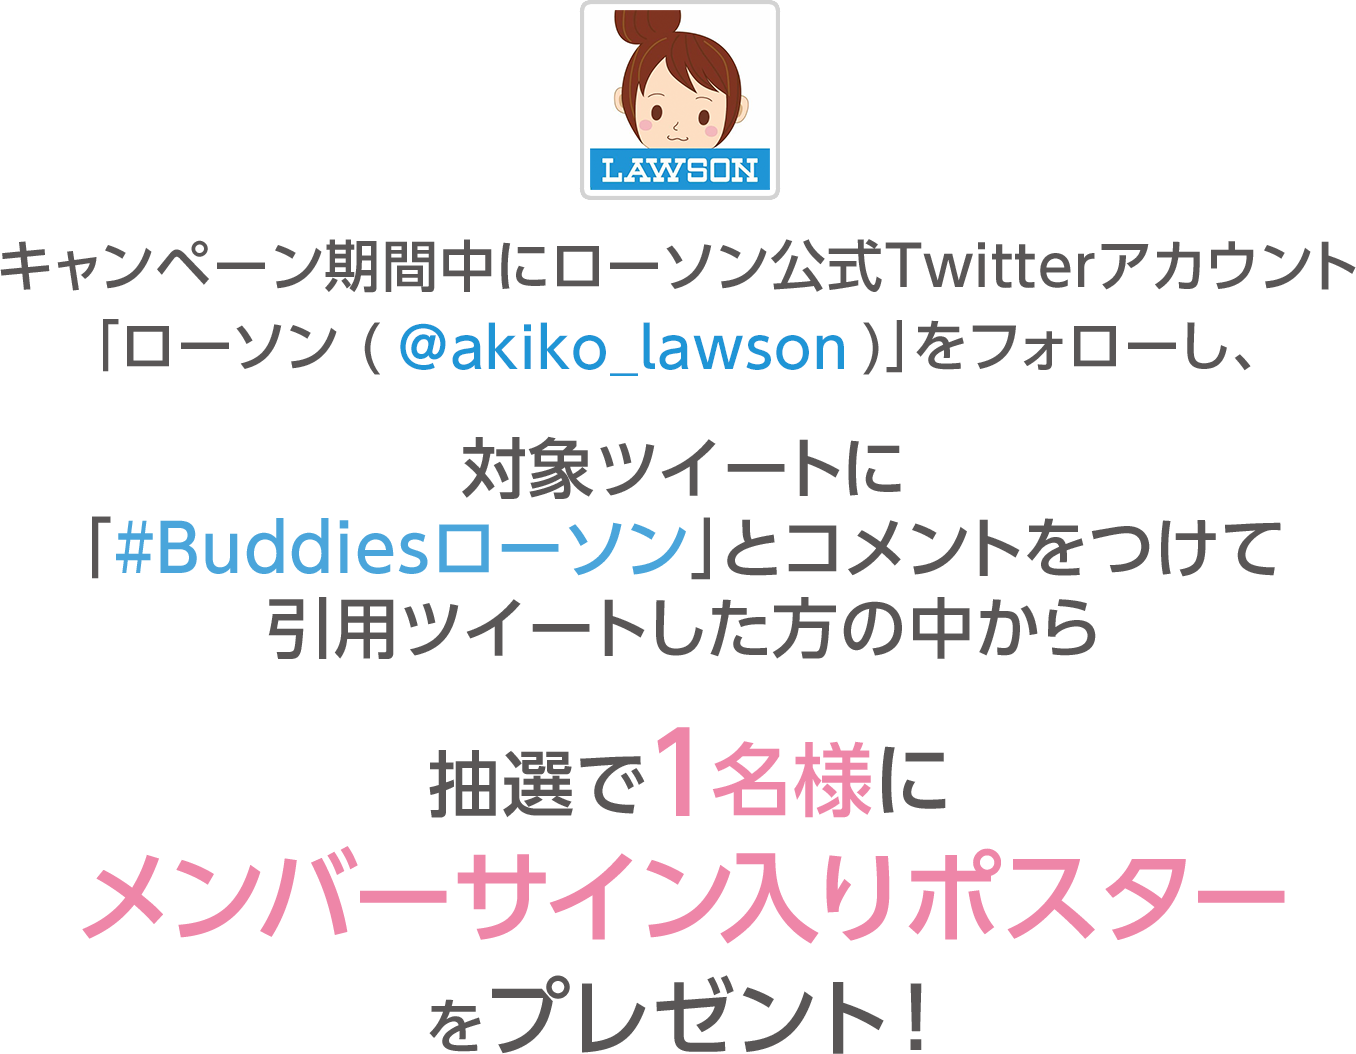 キャンペーン期間中にローソン公式Twitterアカウント「ローソン (@akiko_lawson)」をフォローし、対象ツイートに「#Buddiesローソン」とコメントをつけて引用ツイートした方の中から抽選で1名様にメンバーサイン入りポスターをプレゼント！